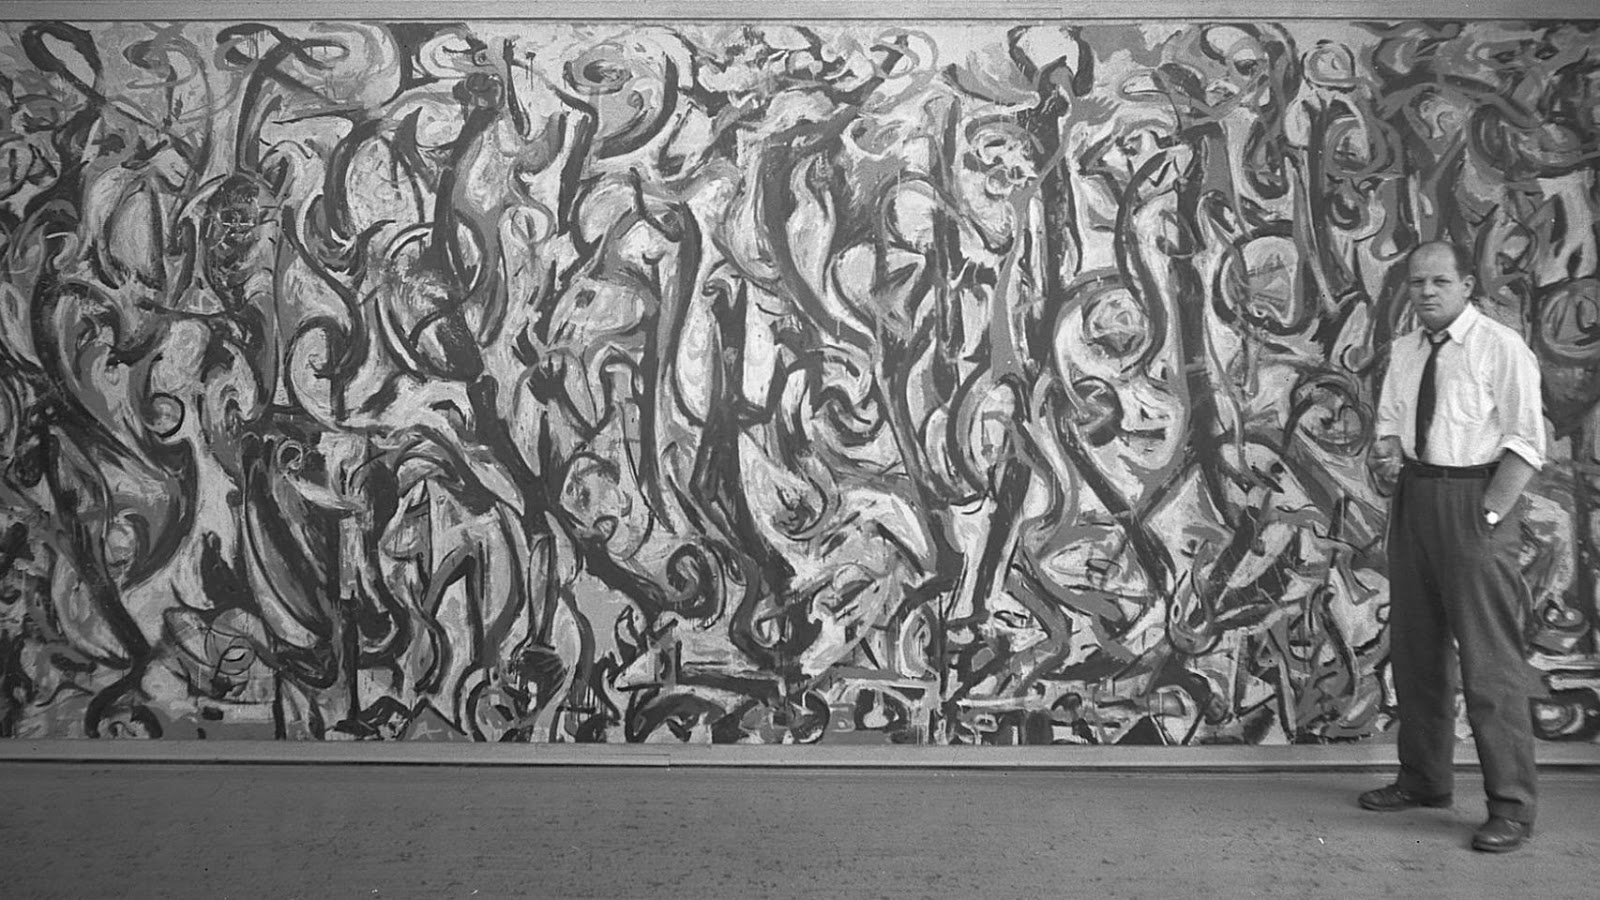 Su obra "Mural" tiene 15 metros cuadrados y fue encargado para colgar en el piso de Guggenheim en Manhattan
